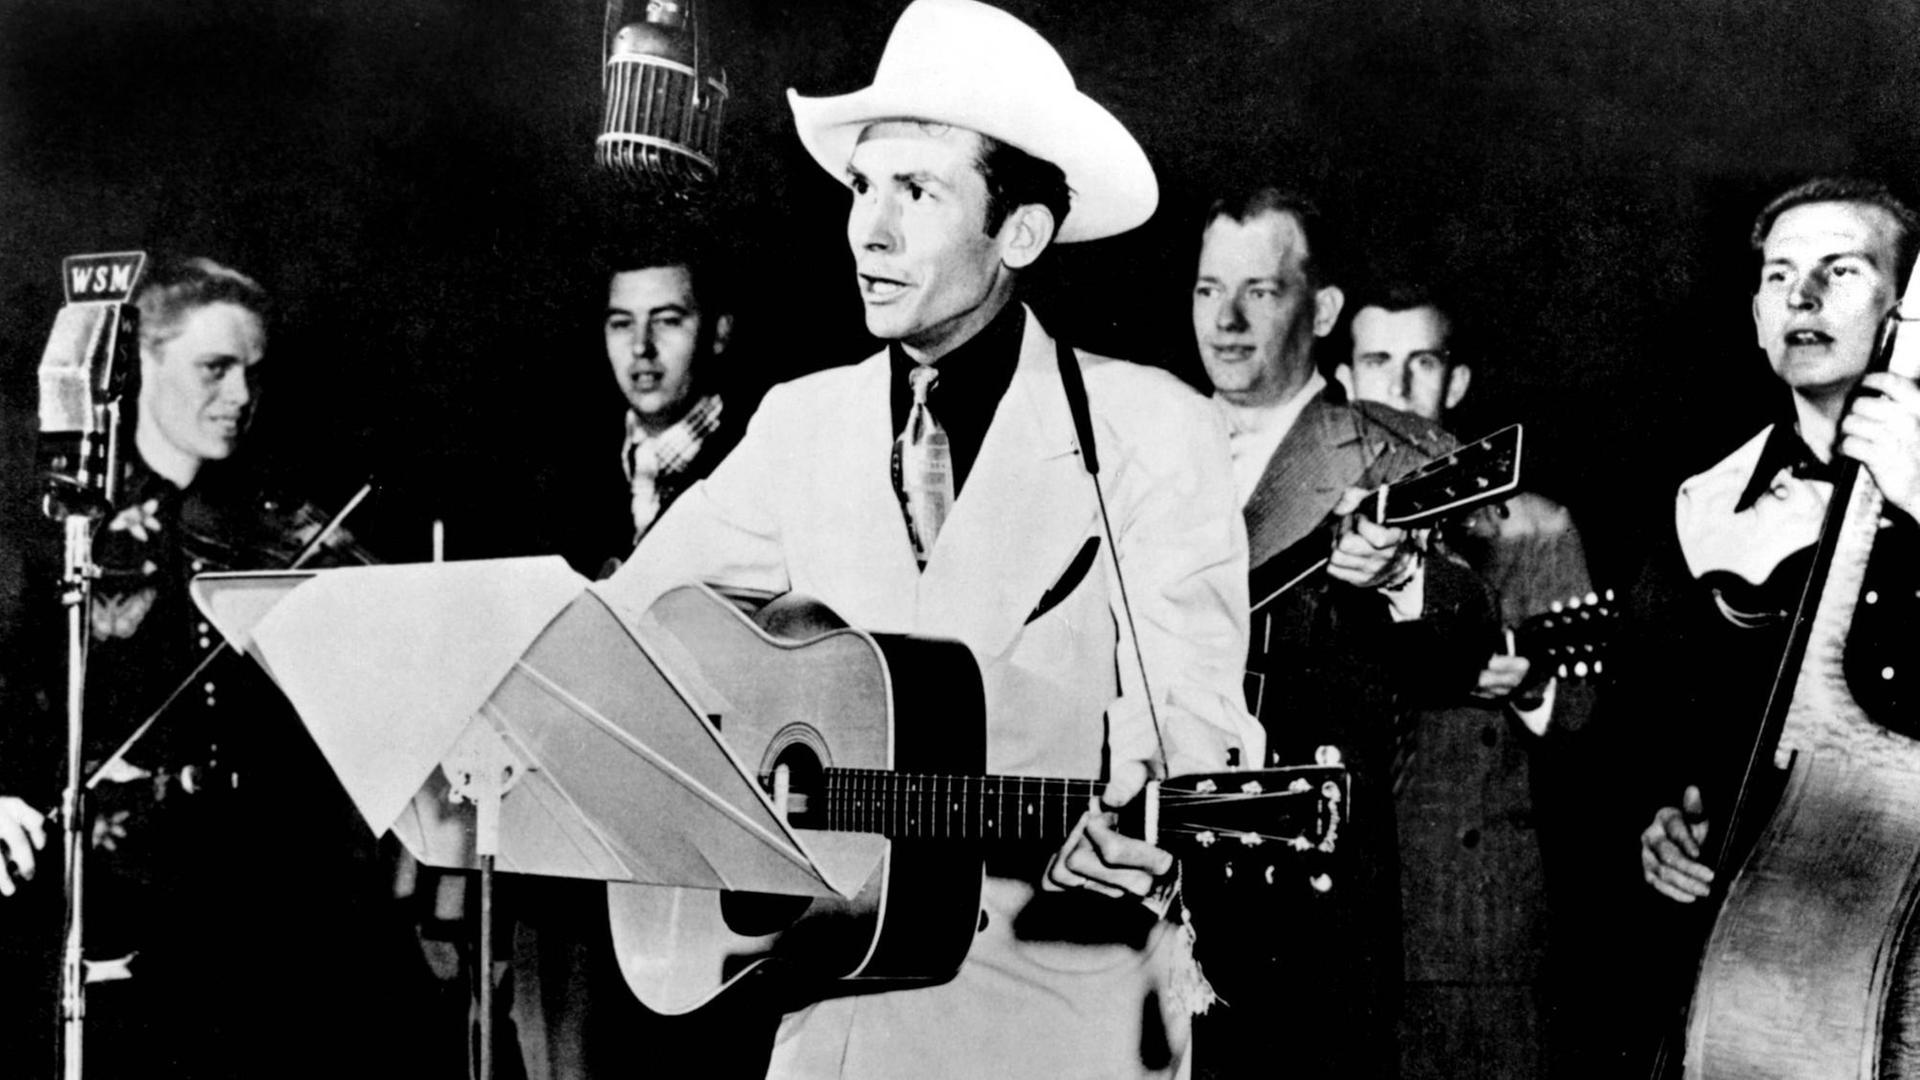 Der Musiker Hank Williams mit Gitarre und Cowboyhut bei einem Auftritt.